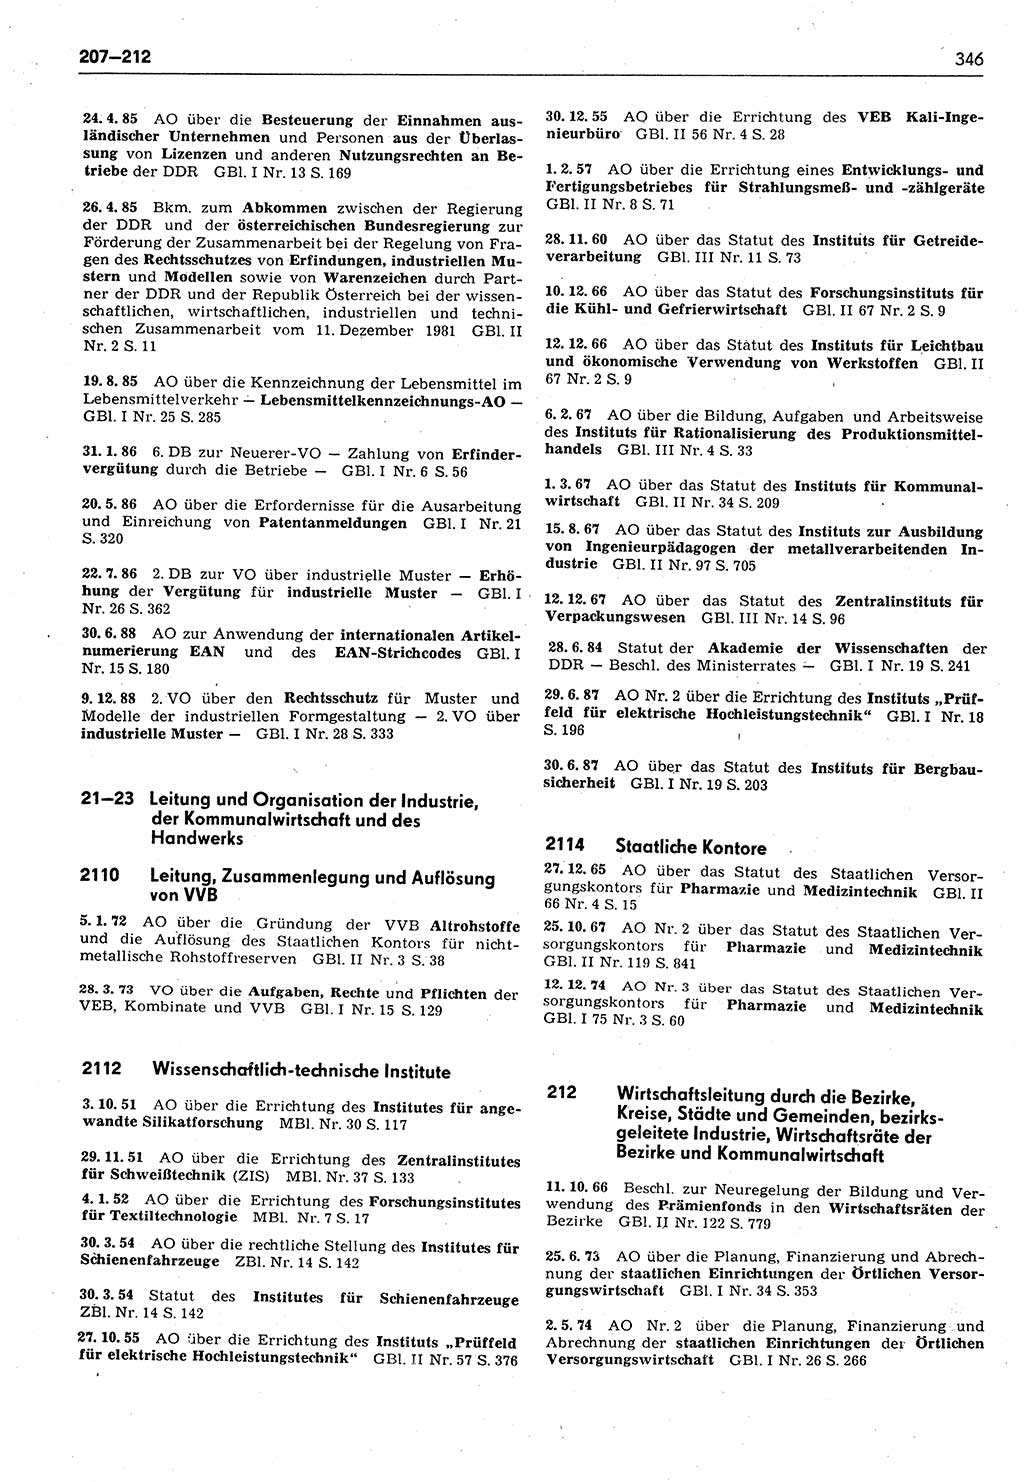 Das geltende Recht der Deutschen Demokratischen Republik (DDR) 1949-1988, Seite 346 (Gelt. R. DDR 1949-1988, S. 346)